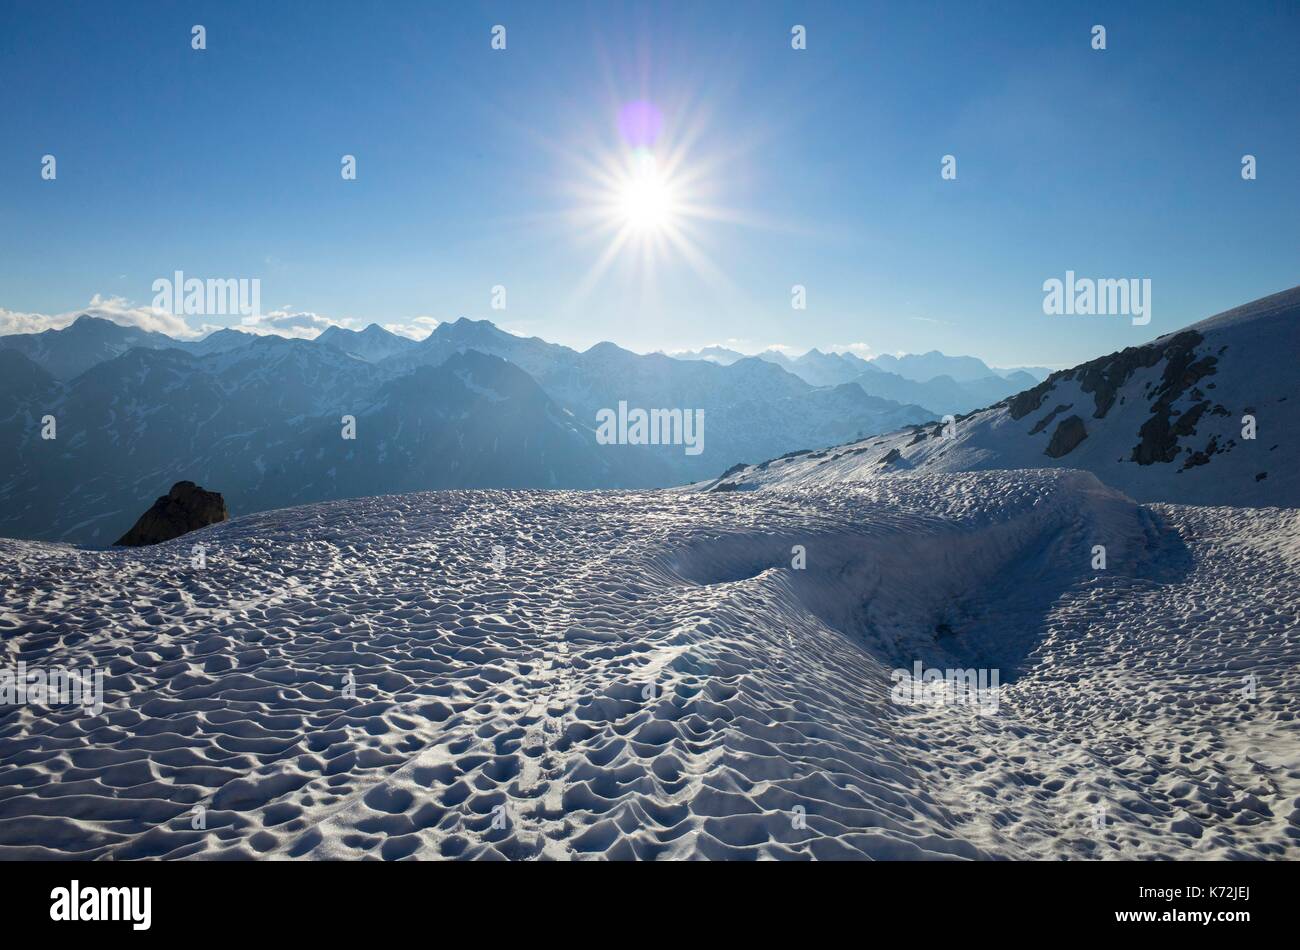 Suisse, Tessin, Col du Saint-Gothard, randonnŽe ˆ sci sur le sommet de la fibbia (2738 m) facilitŽe par l'ouverture estivale du col routier du Saint-Gothard Foto Stock